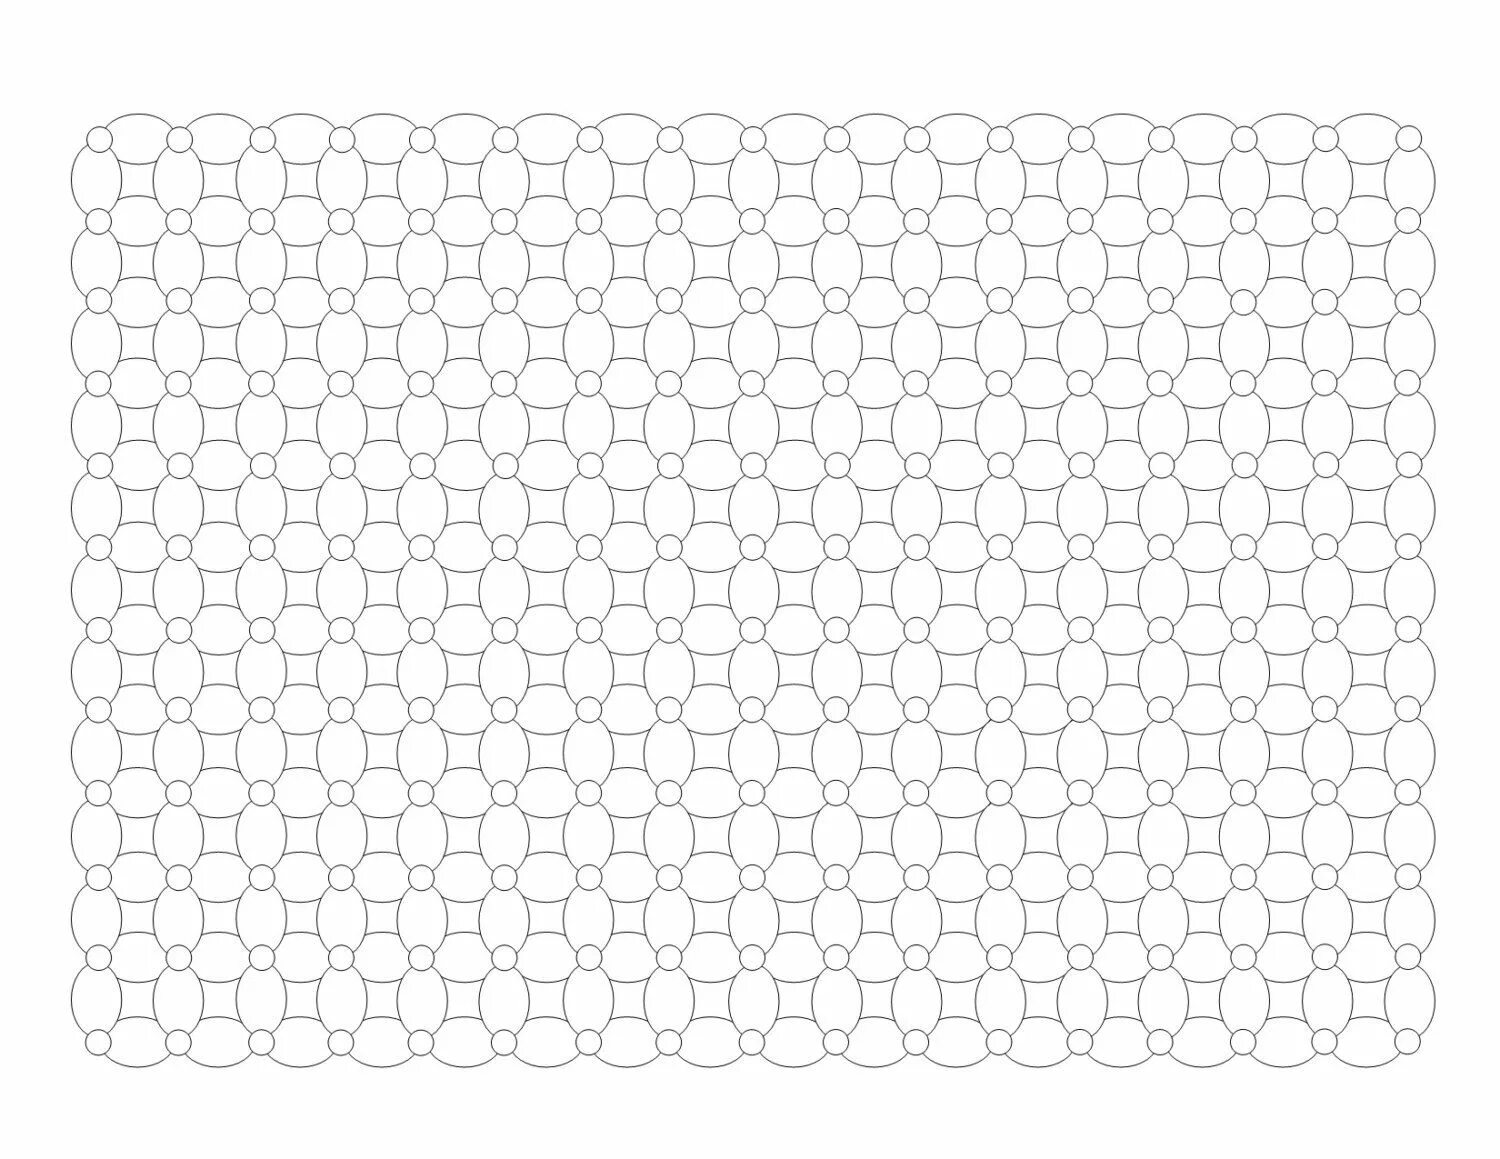 Сетчатое поле. Isometric Hexagon сетка. Сетка Гексагон для ДНД а4. Гексагональная сетка а4. Сетка шестиугольников.